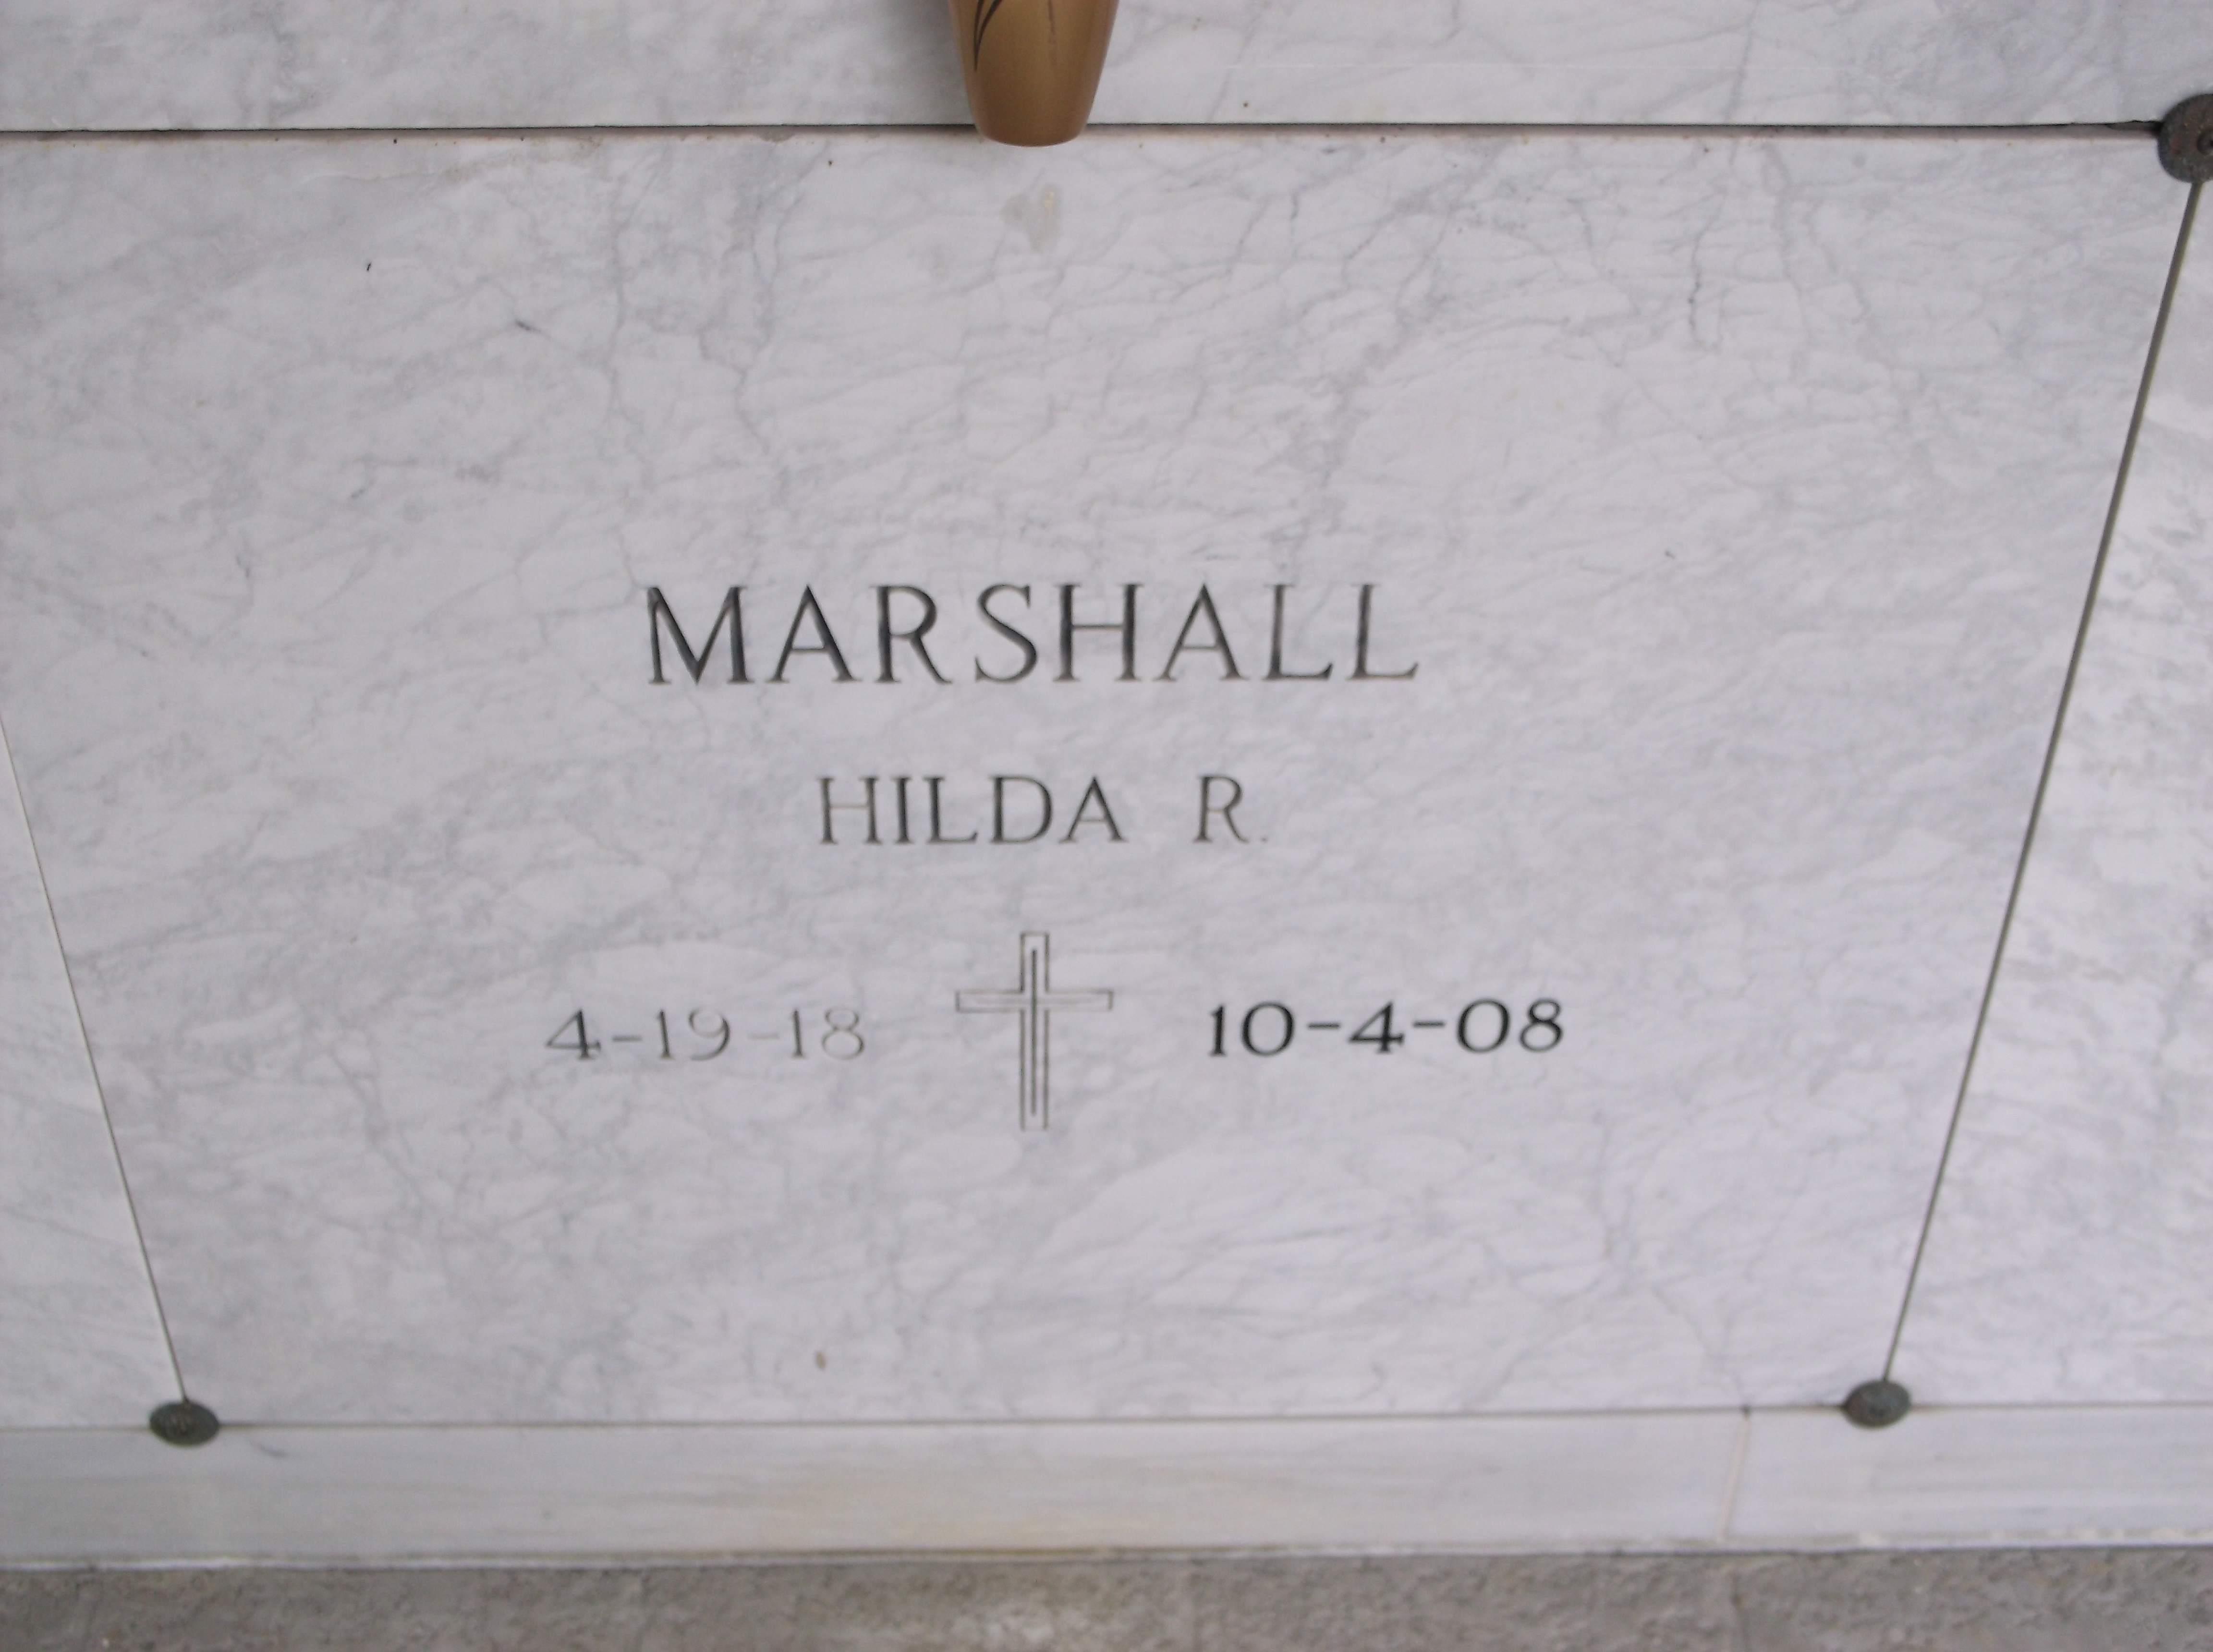 Hilda R Marshall